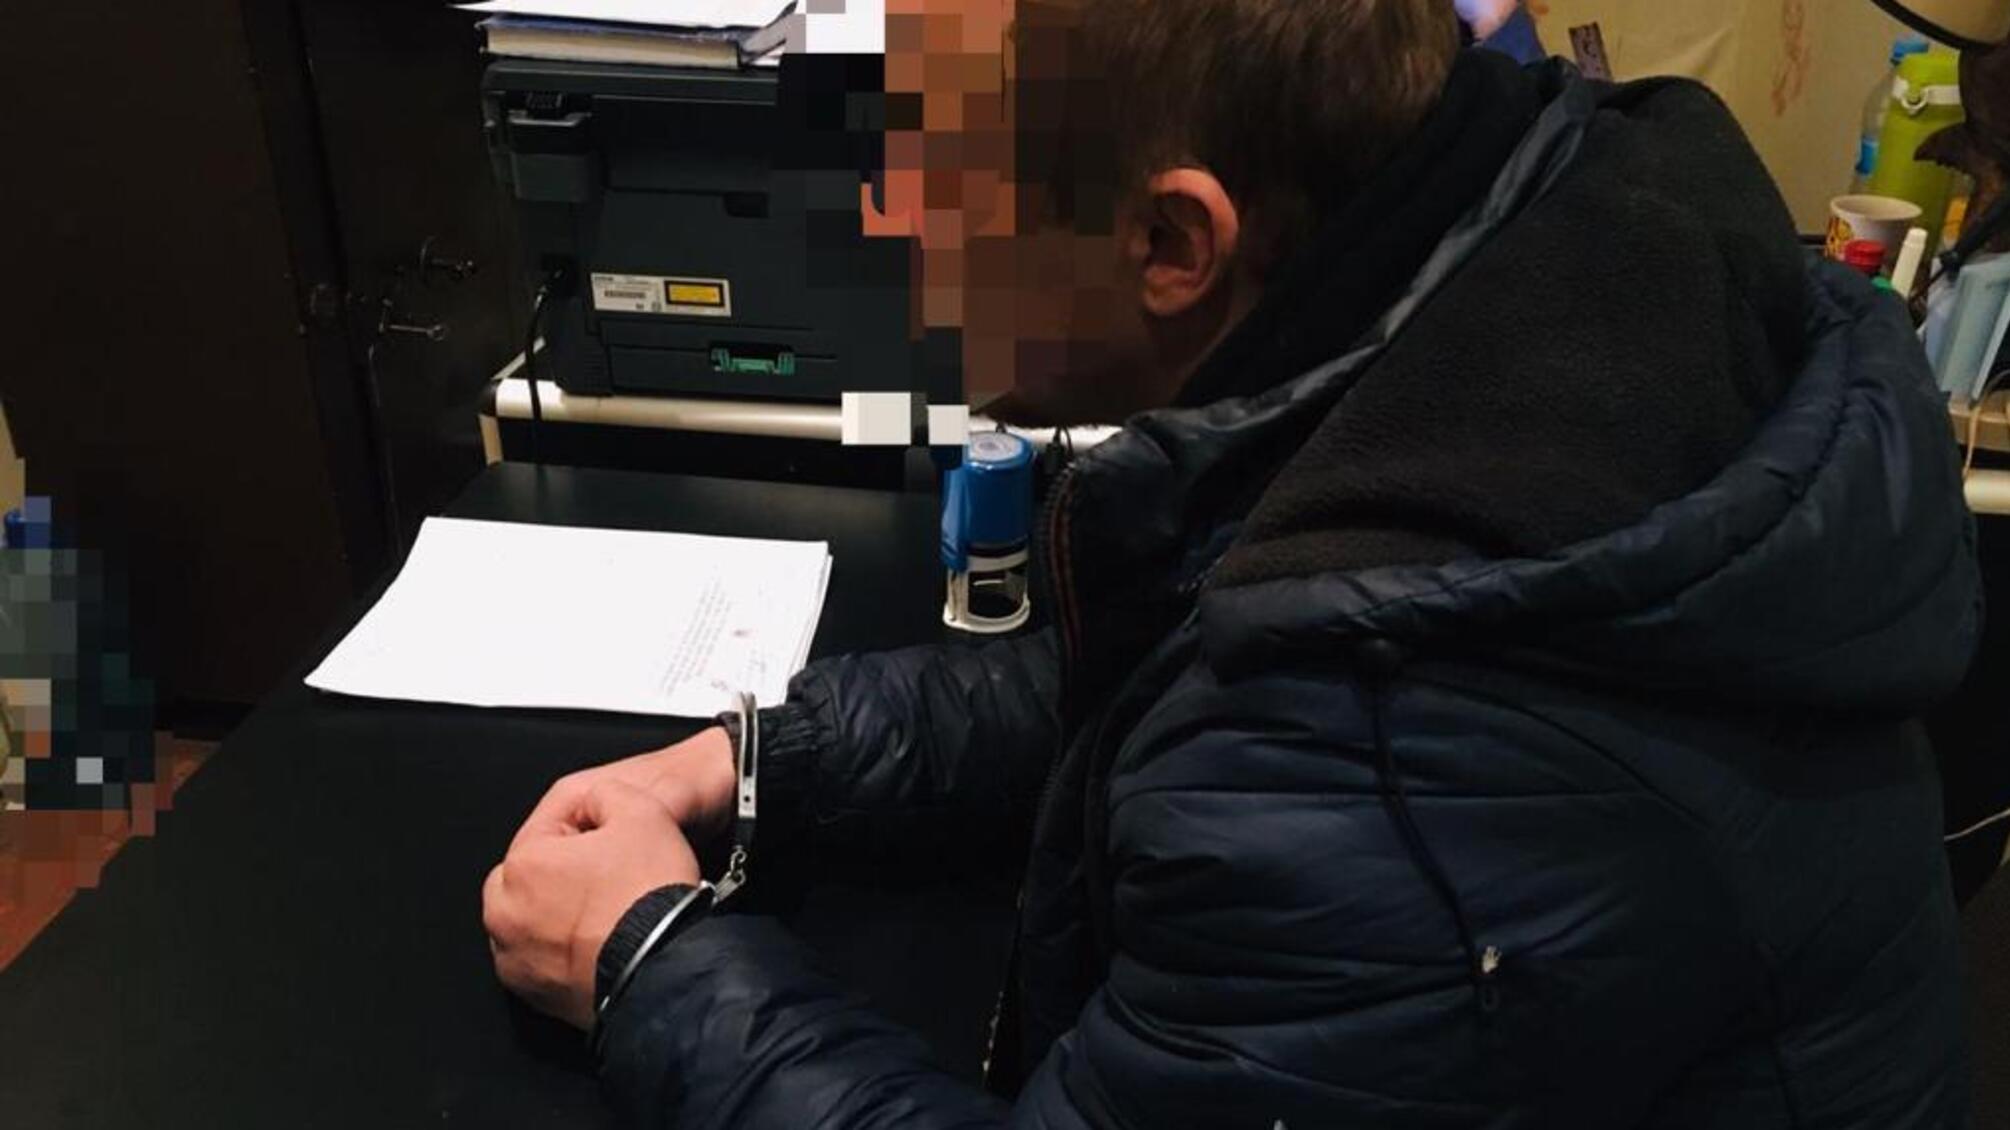 В Одесі поліцейські затримали громадянина сусідньої країни, який розшукувався Інтерполом